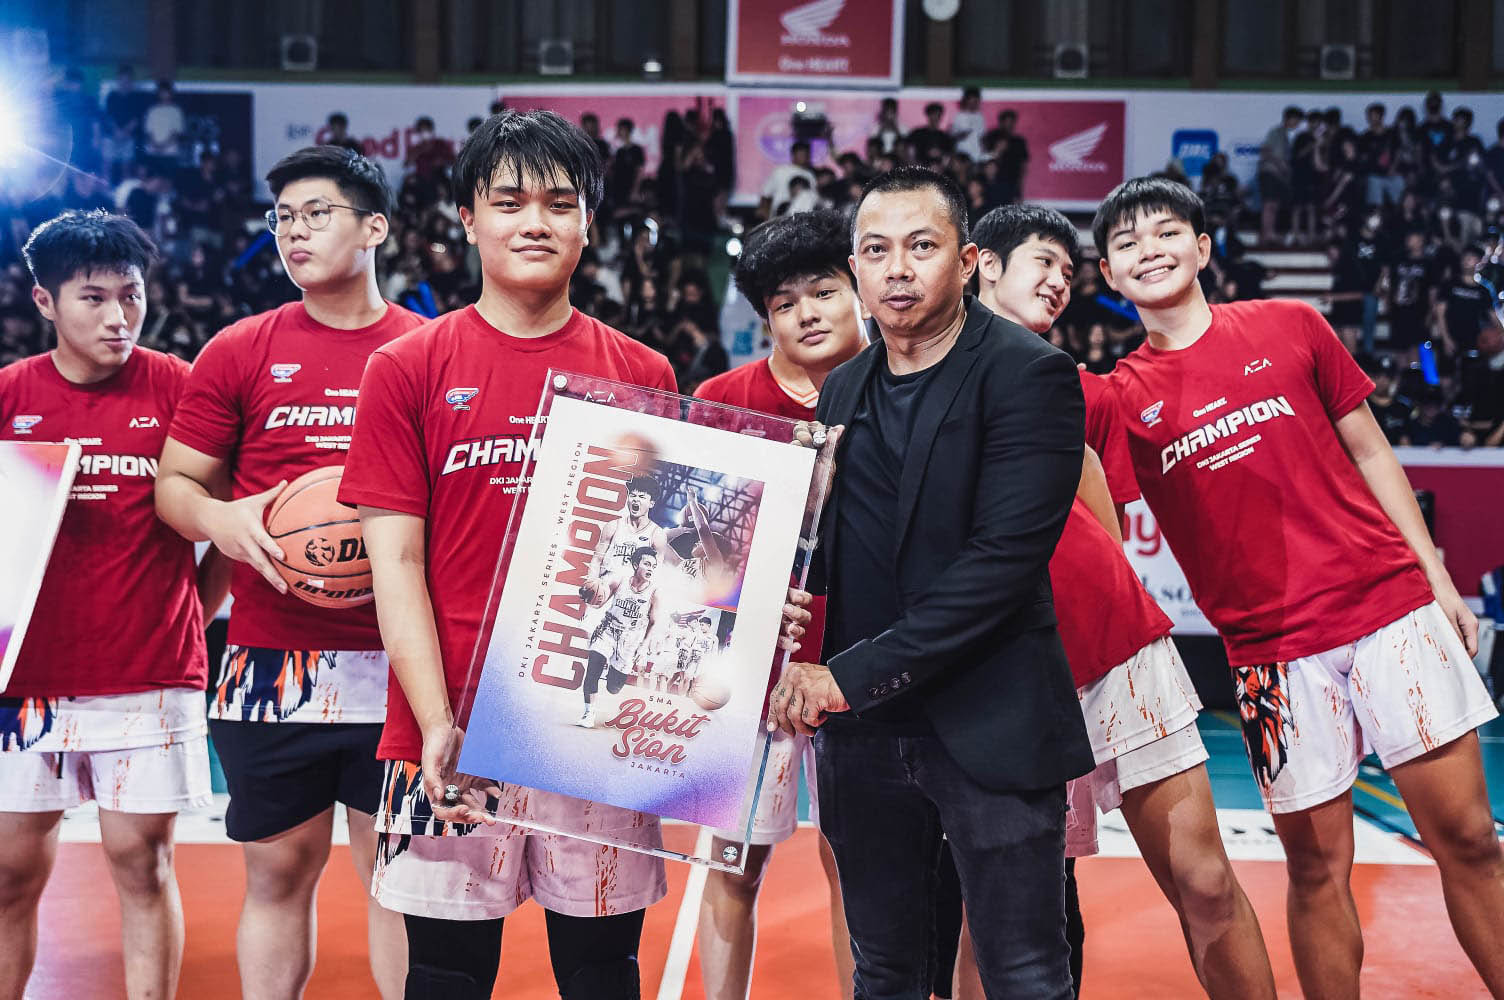 Jakarta Barat Dikuasai 2 Tim Basket, SMA Mana Selanjutnya